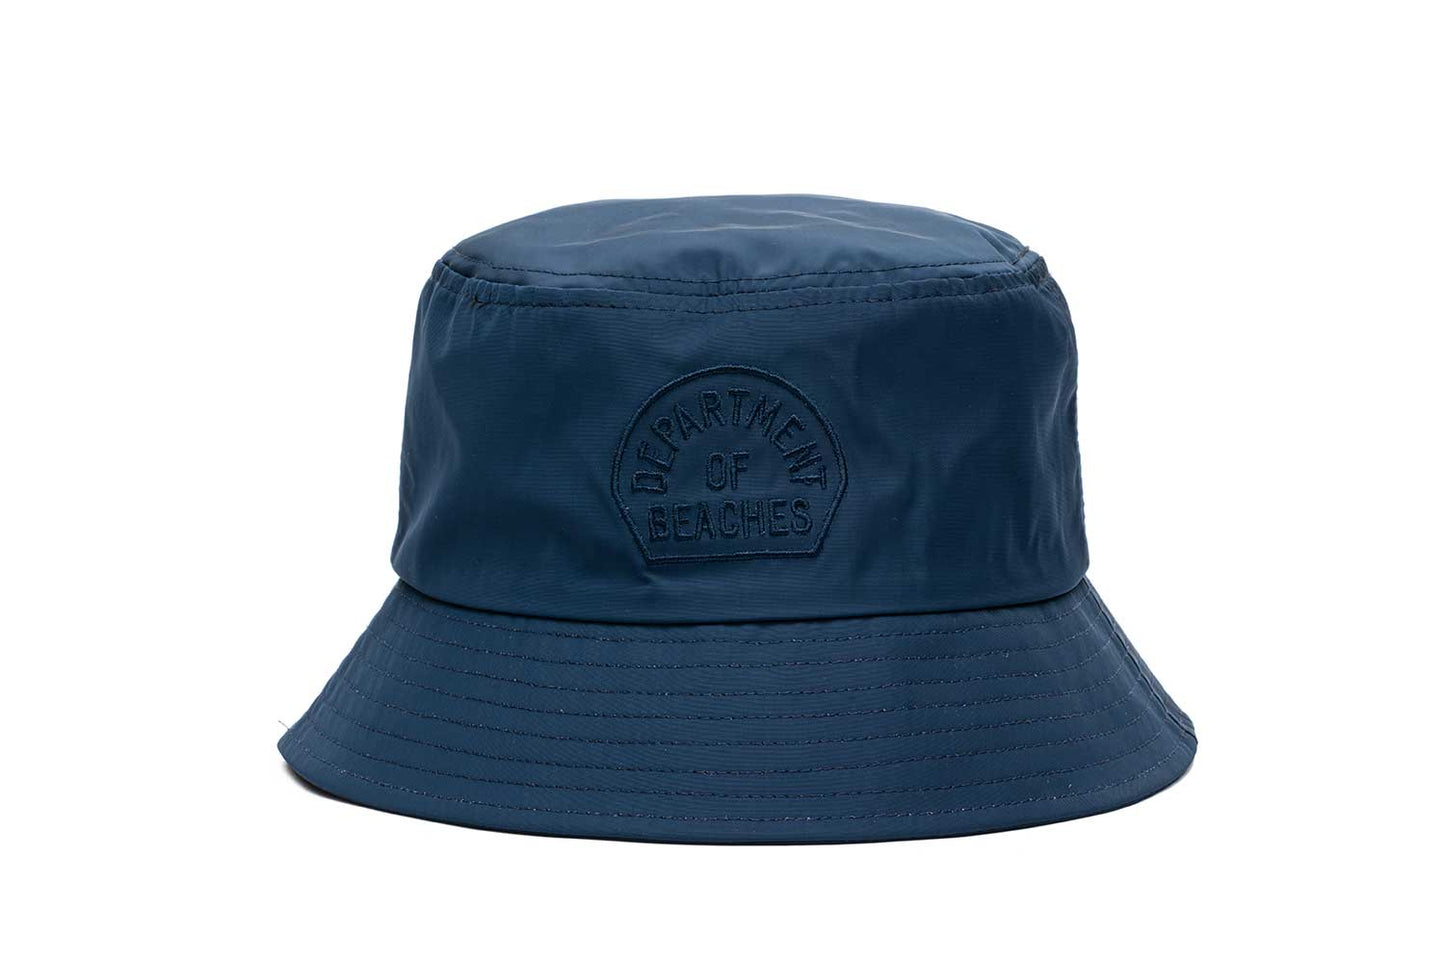 Dept of Beaches - Bucket Hat - Navy